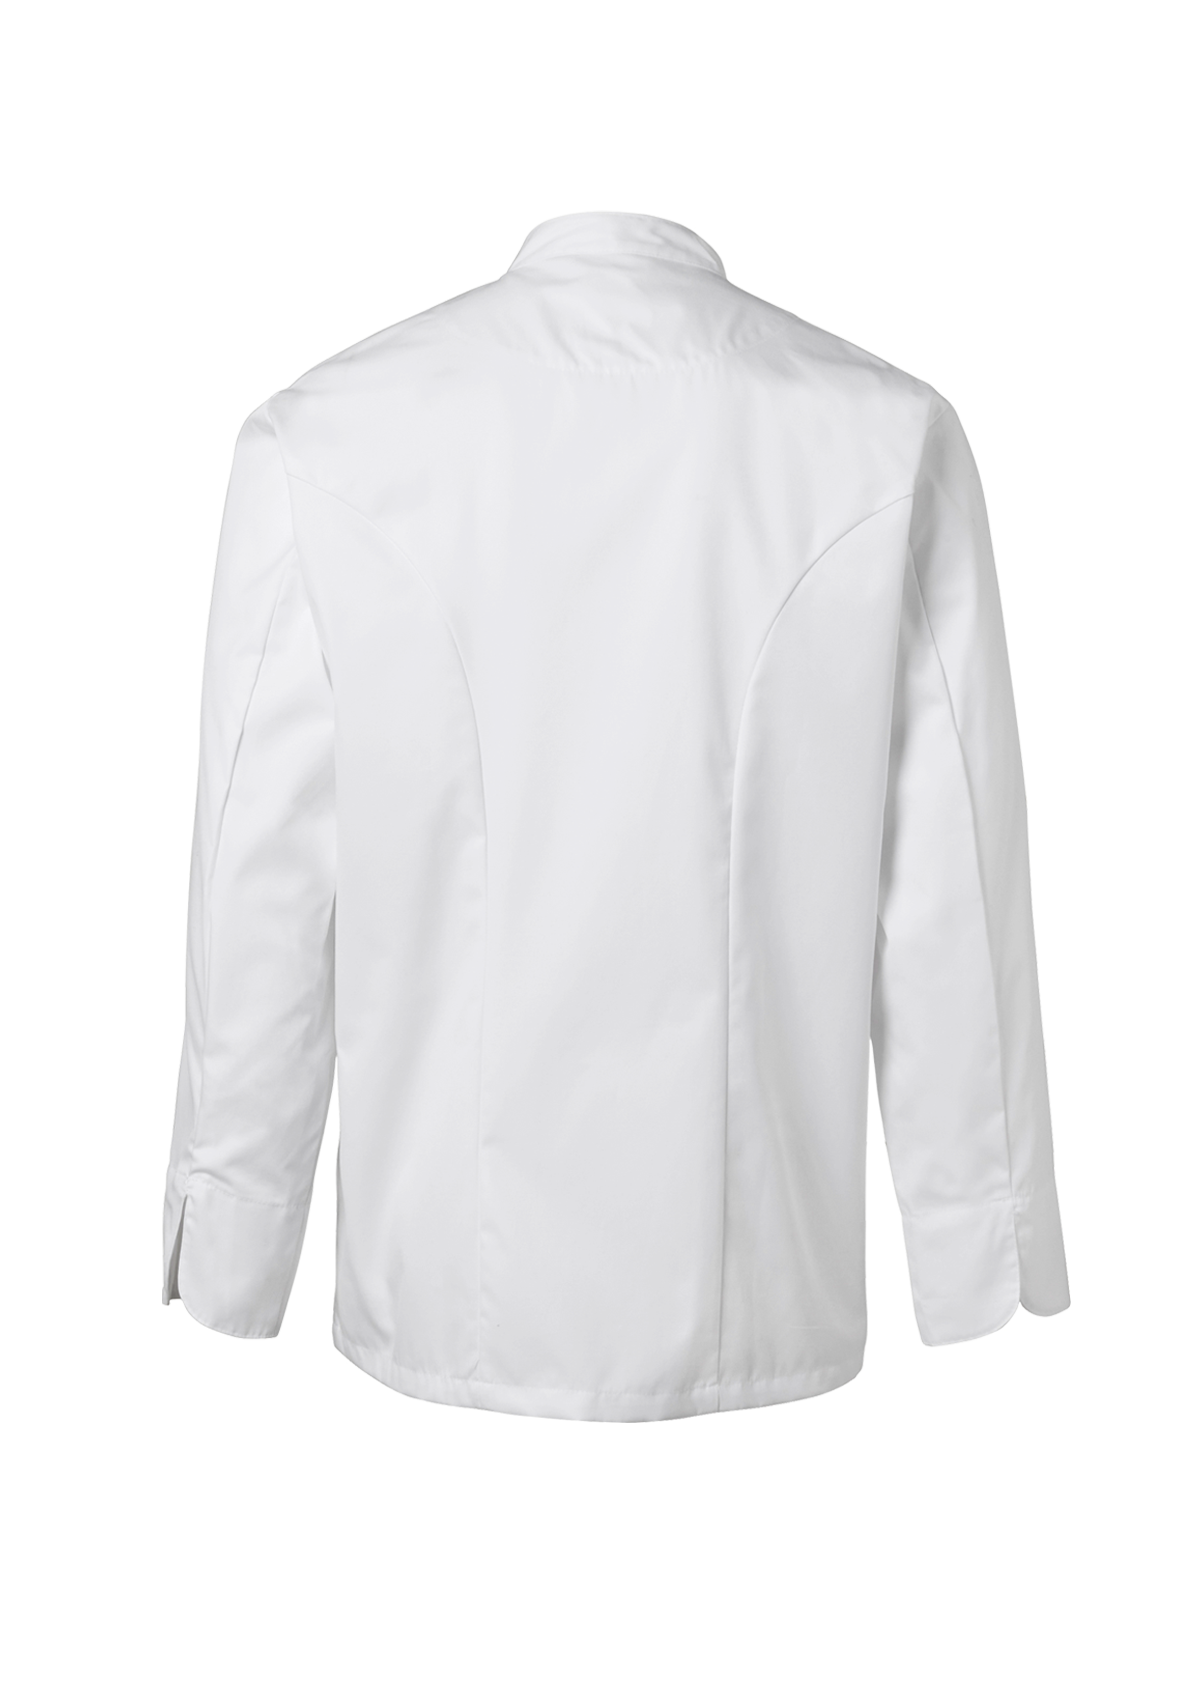 Exclusive Men's Chef Jacket. Segers | Cookniche